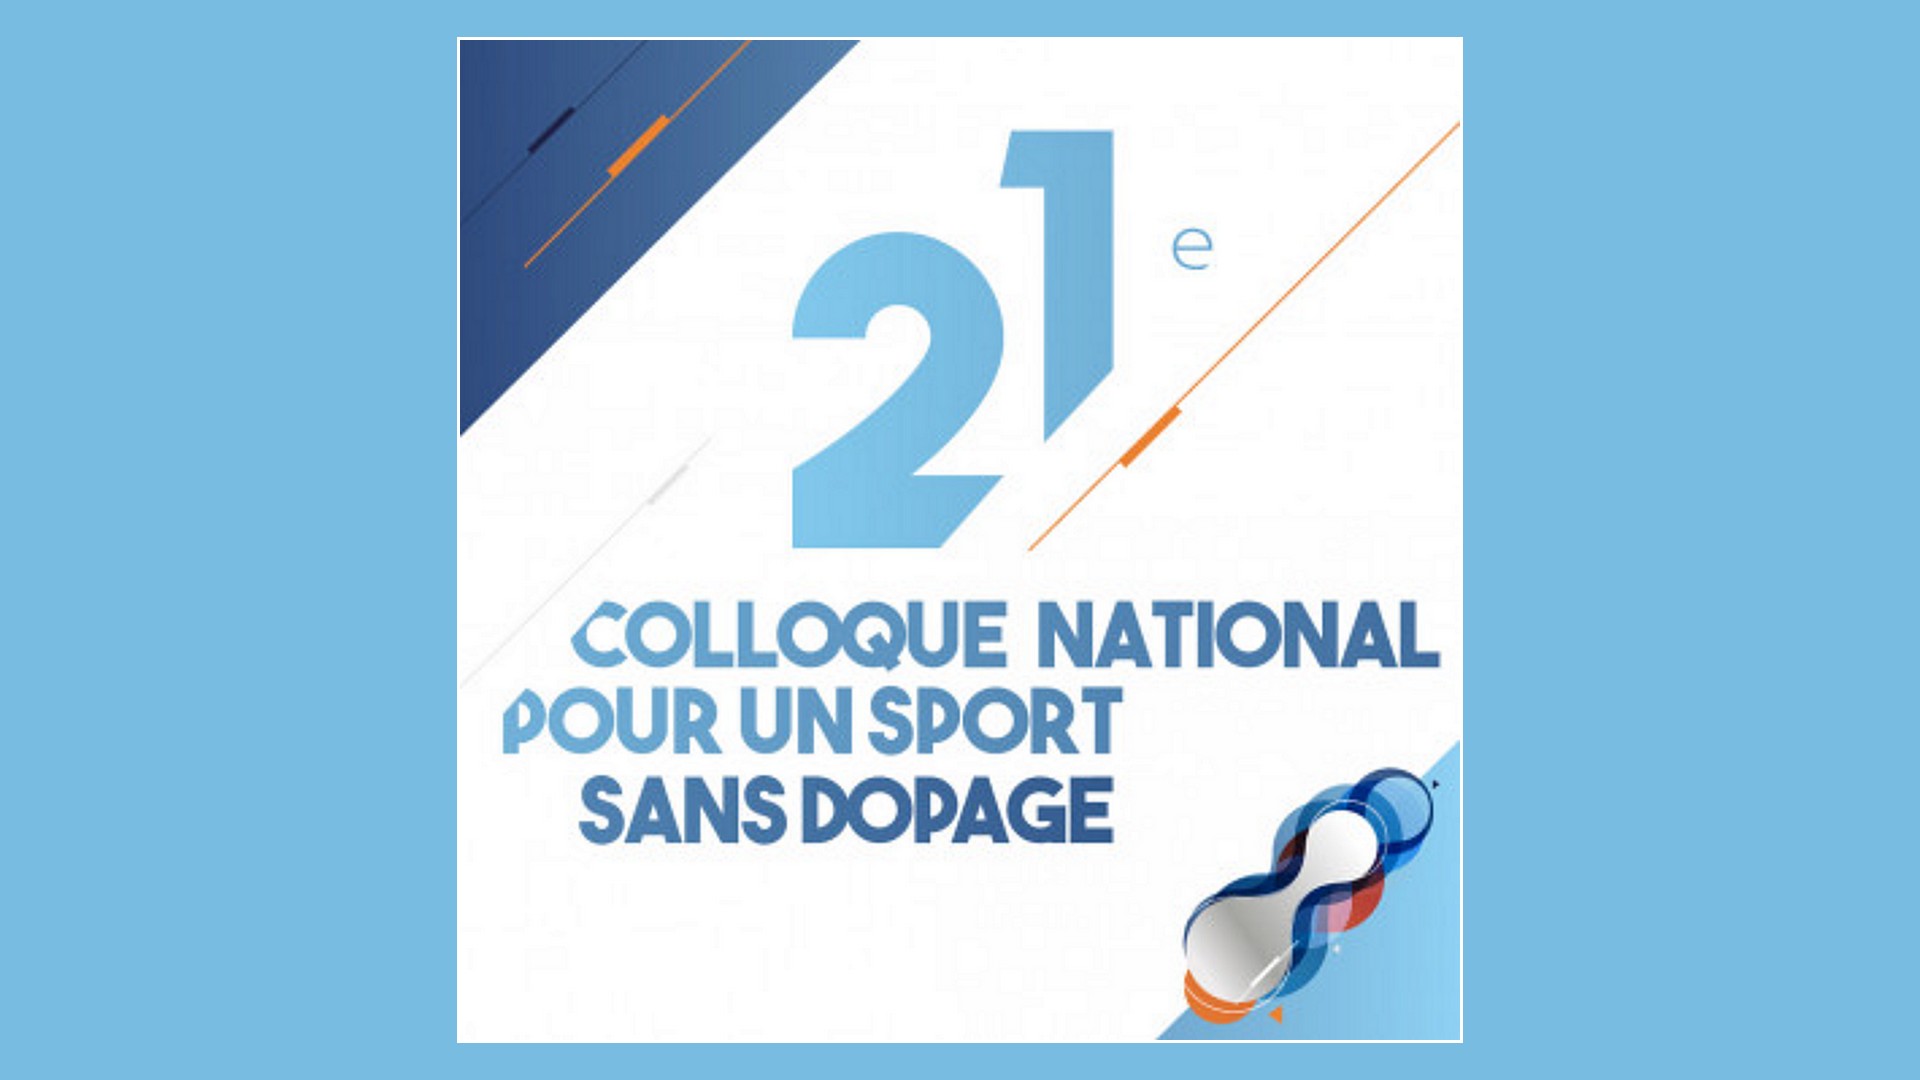 21e colloque national pour un sport sans dopage